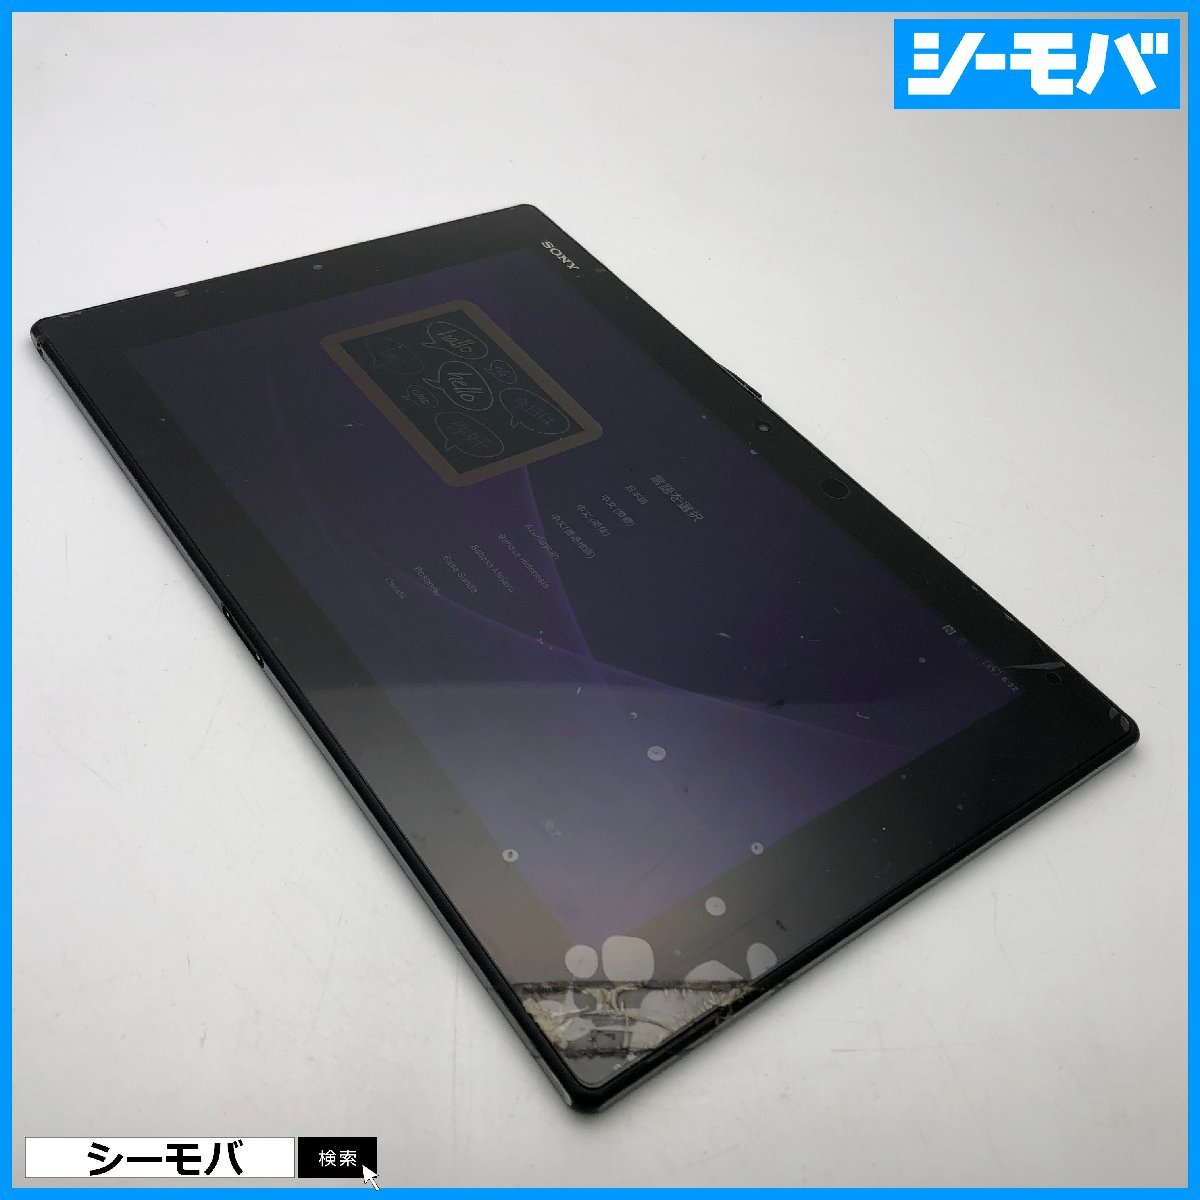 【ジャンク通電リセット済】au Xperia Z2 Tablet SOT21エクスペリア タブレット android アンドロイド 画面割れ本体破損 RUUN13769の画像1